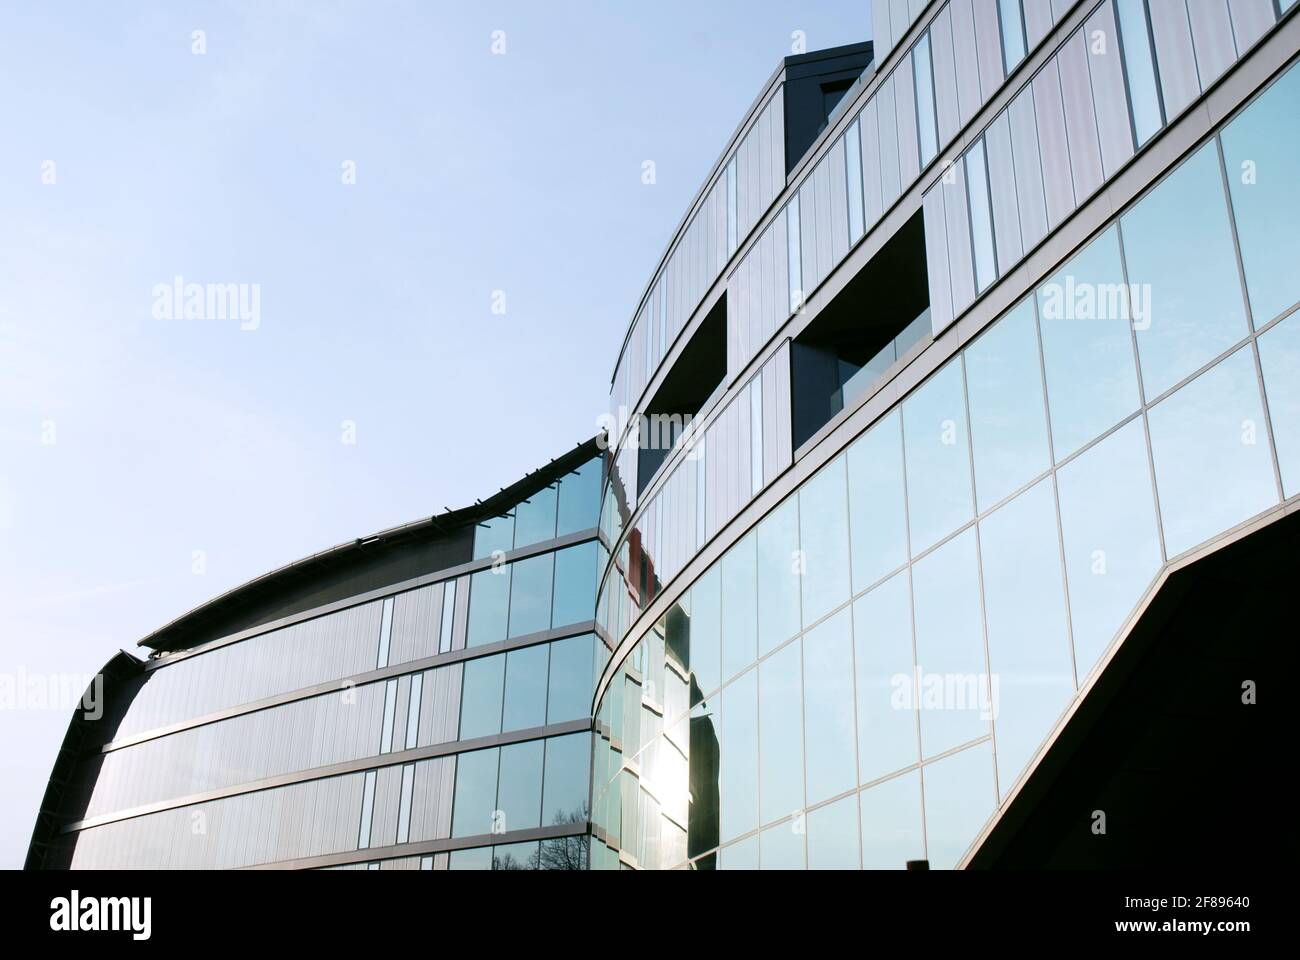 Moderne Architektur Glas und abstrahiert Formen Stockfotografie - Alamy